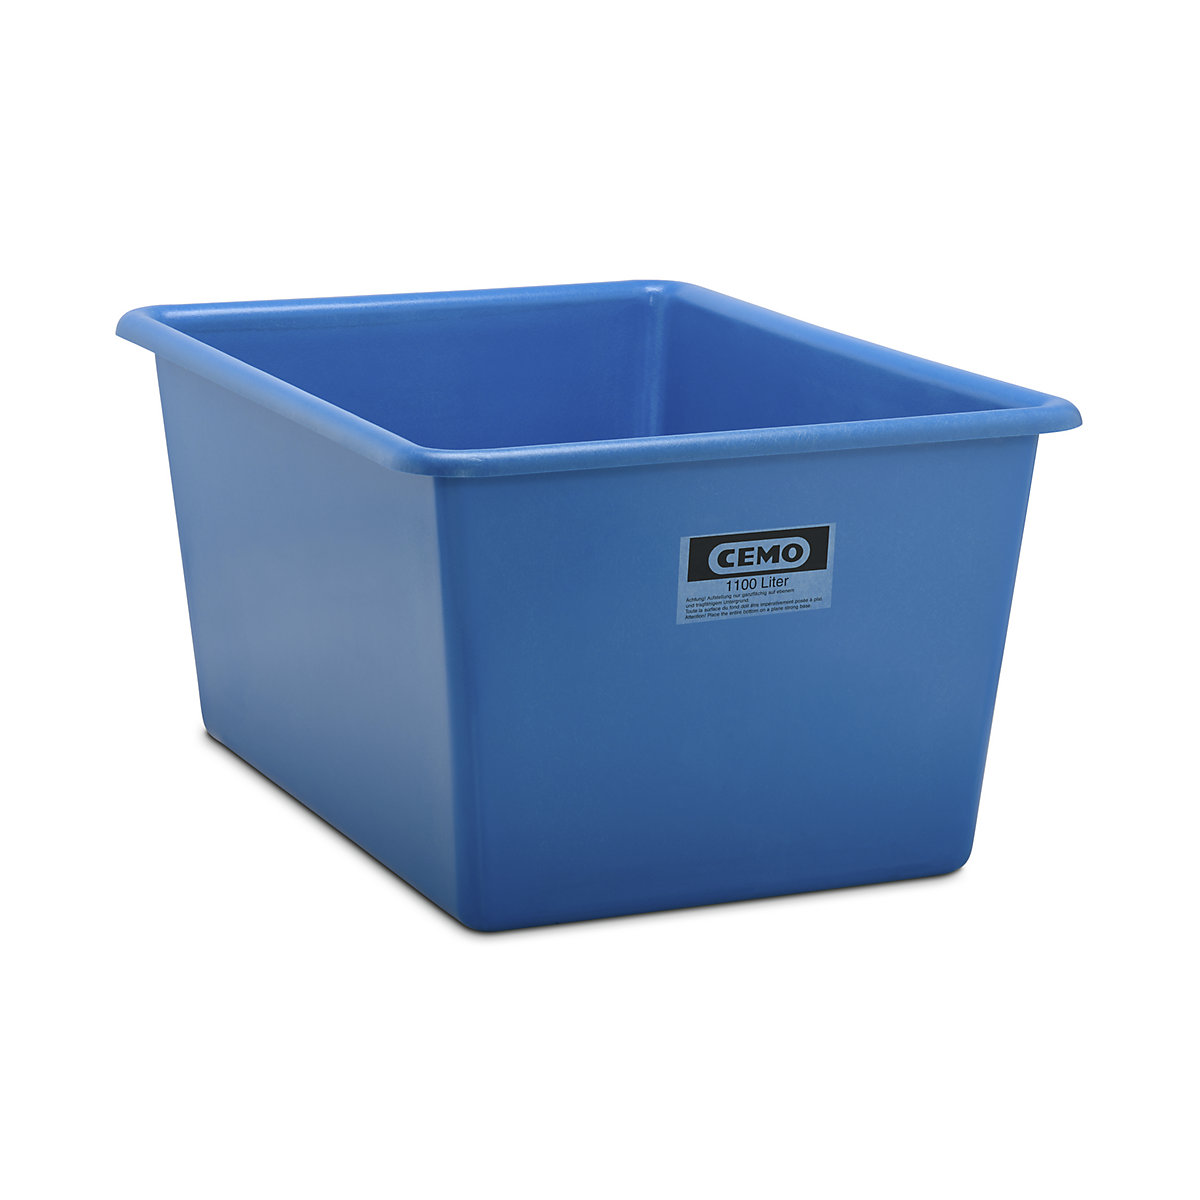 CEMO Großbehälter aus GfK, Inhalt 1100 l, LxBxH 1620 x 1190 x 800 mm, blau